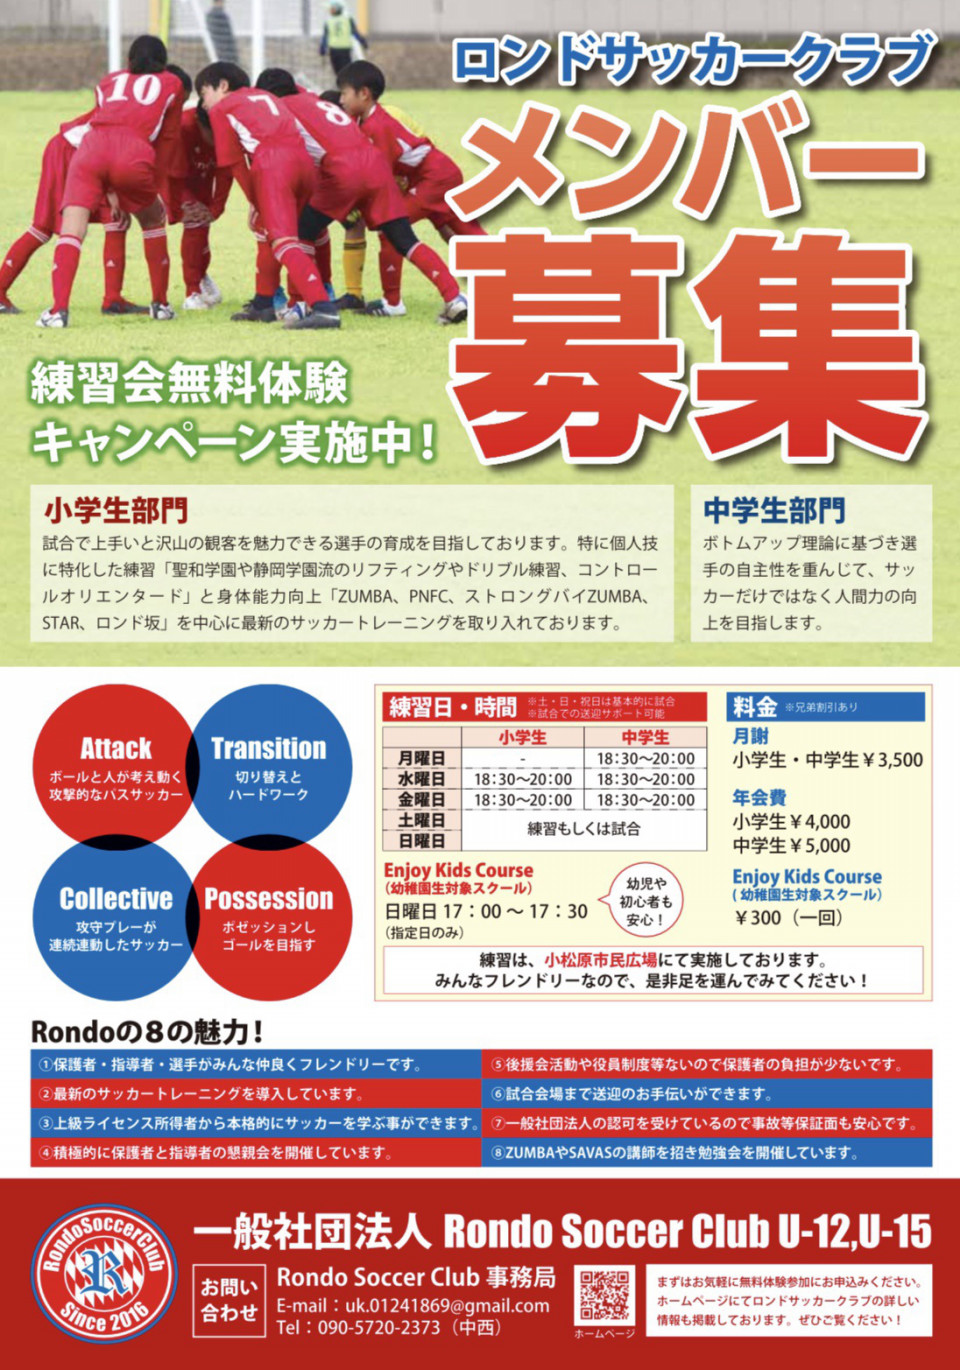 宮崎少年サッカー応援団 チームブログ Rondo Soccer Club U 12 ロンドsc チラシが完成しました